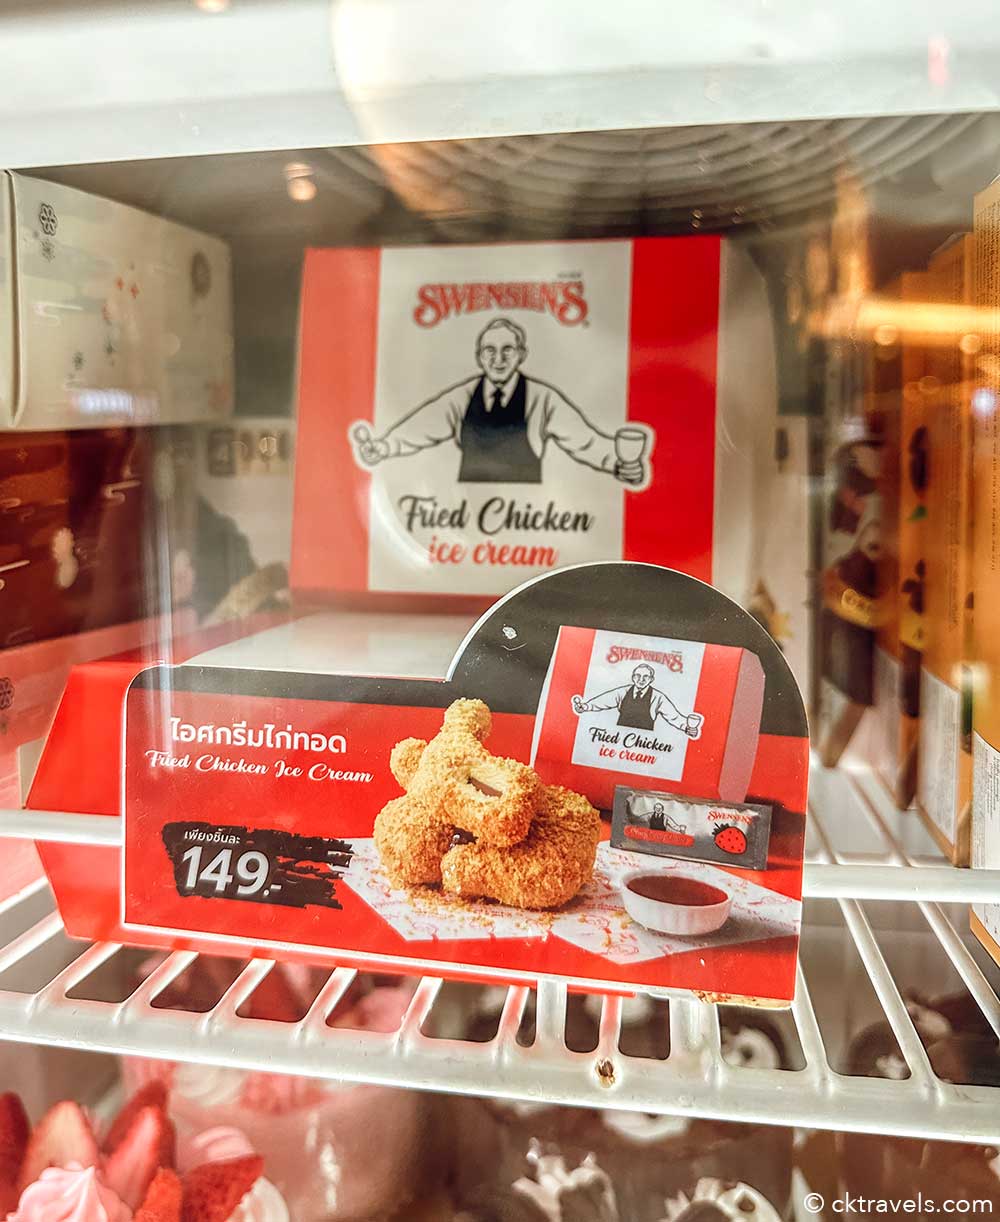 Swensen's fried chicken ice cream - dessert shop Thailand